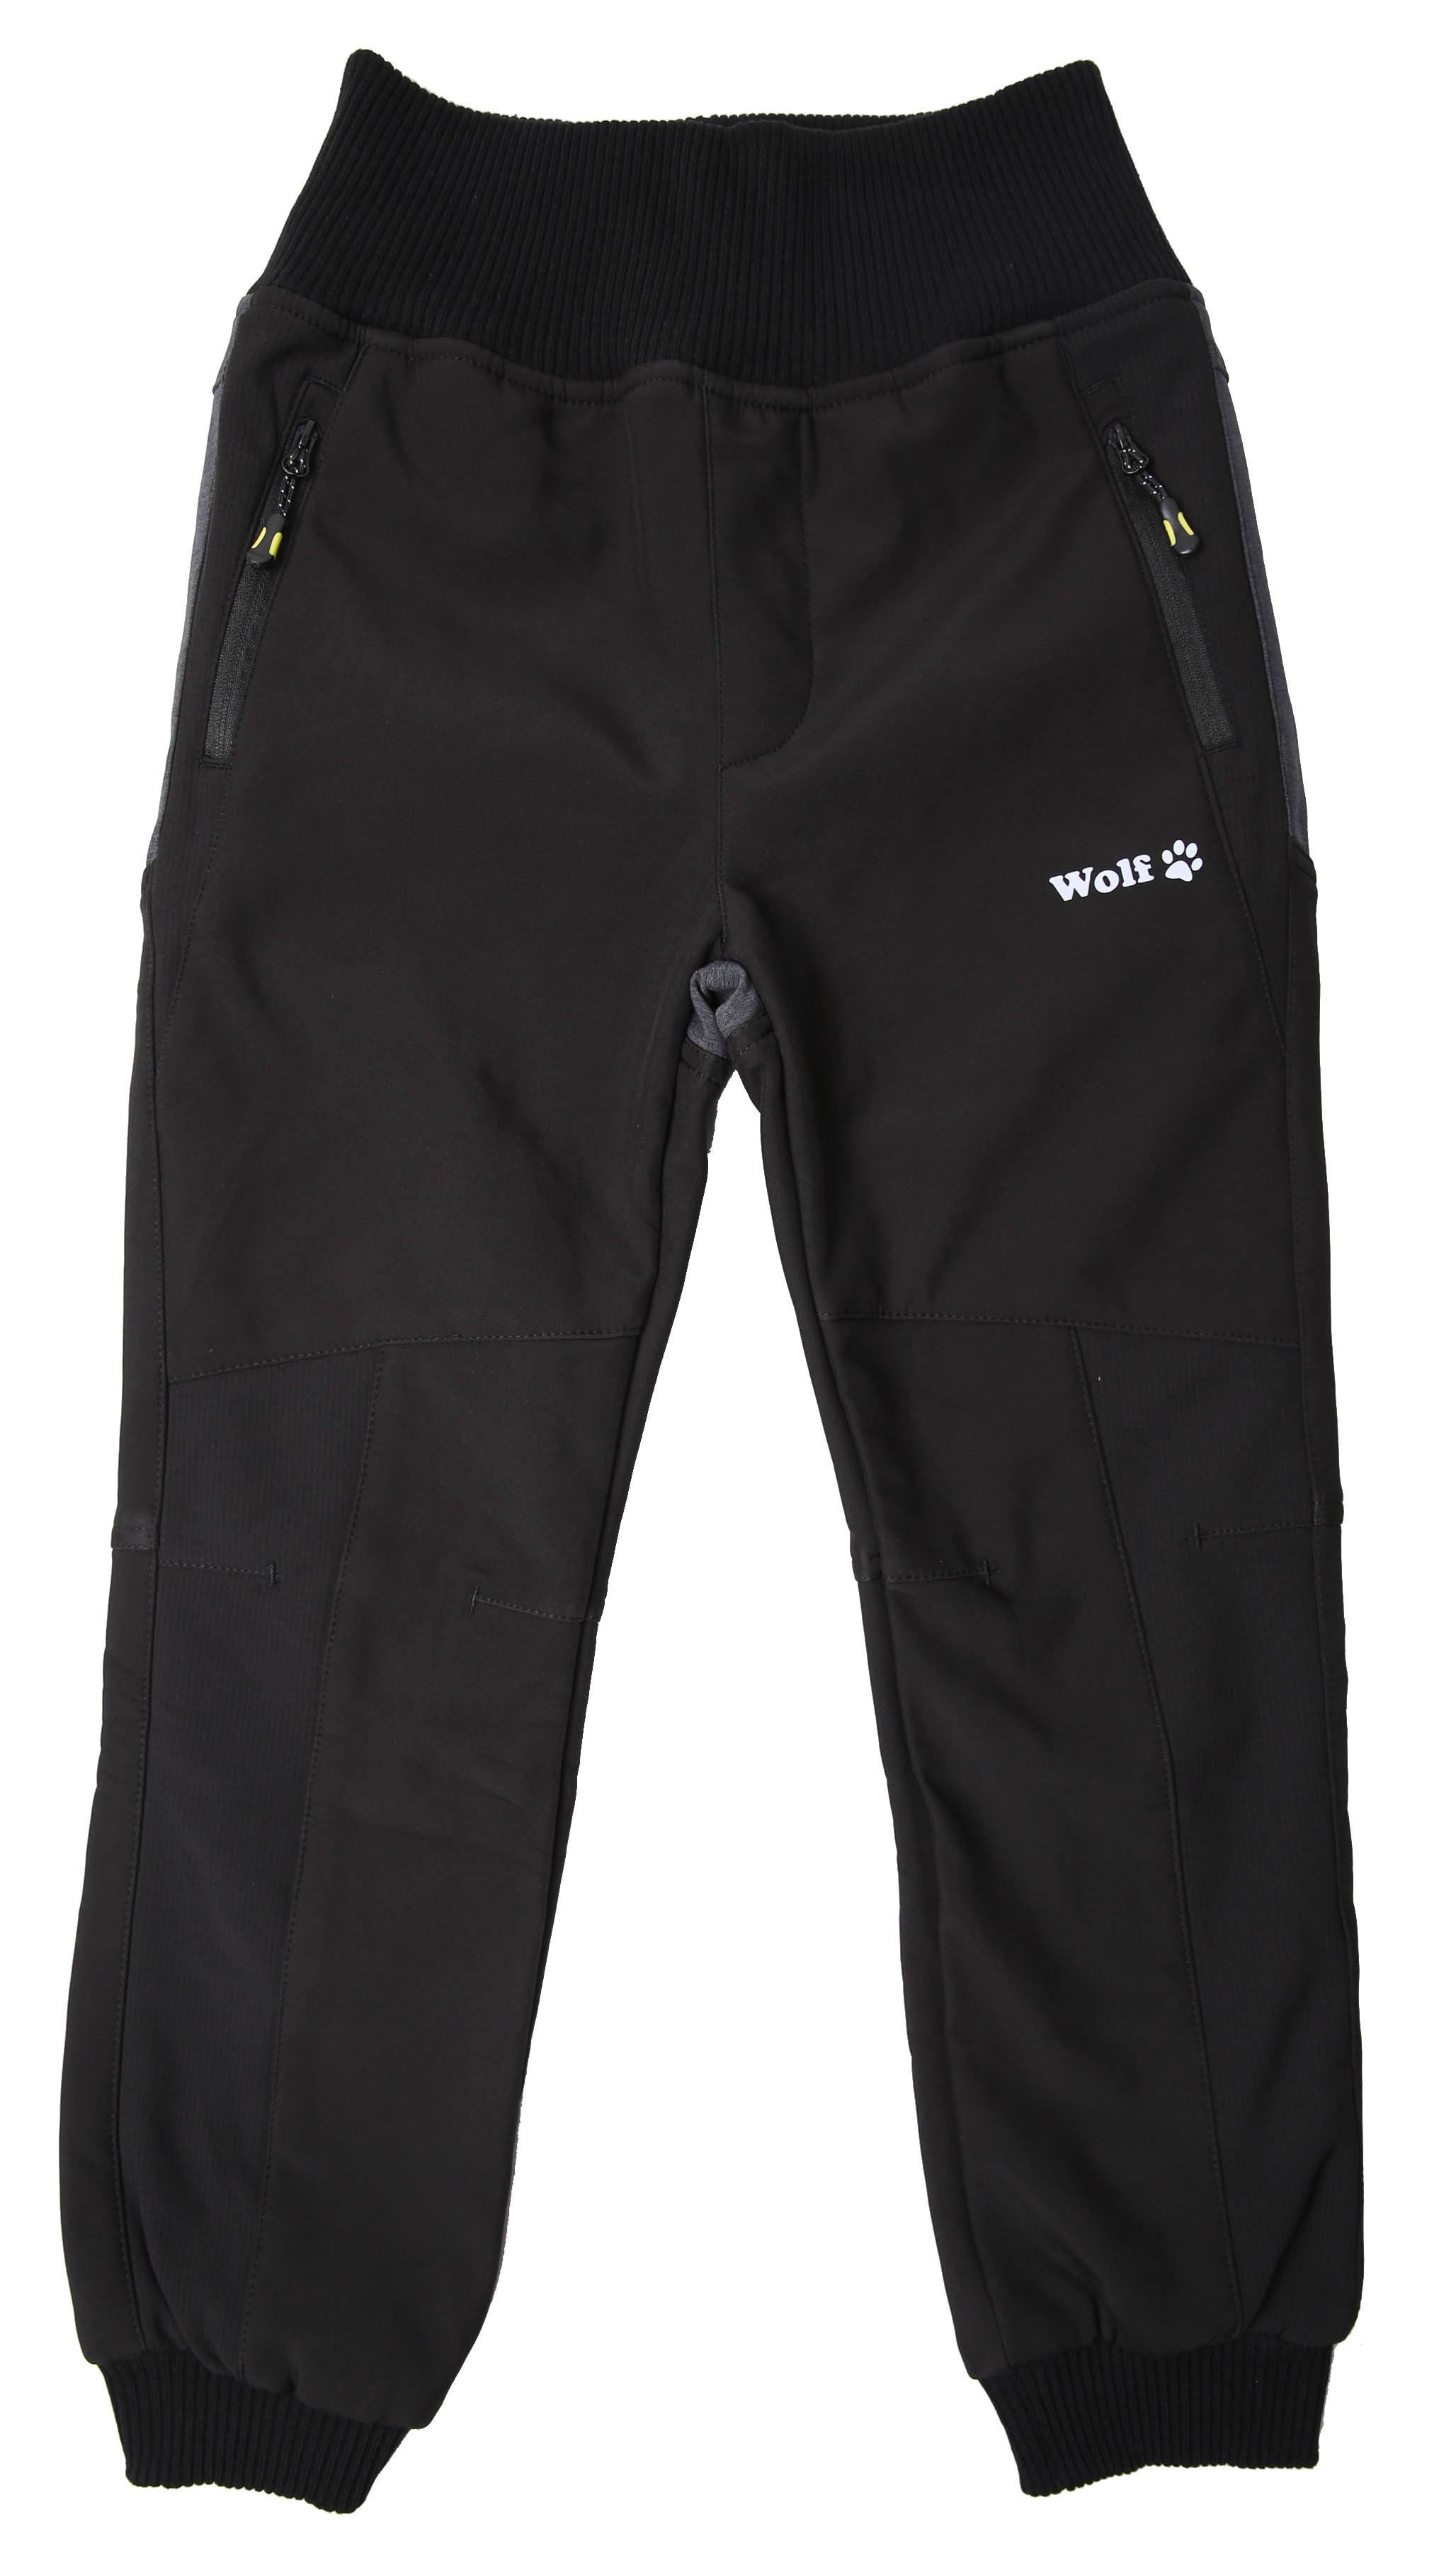 Chlapecké softshellové kalhoty, zateplené - Wolf B2399, černá Barva: Černá, Velikost: 98